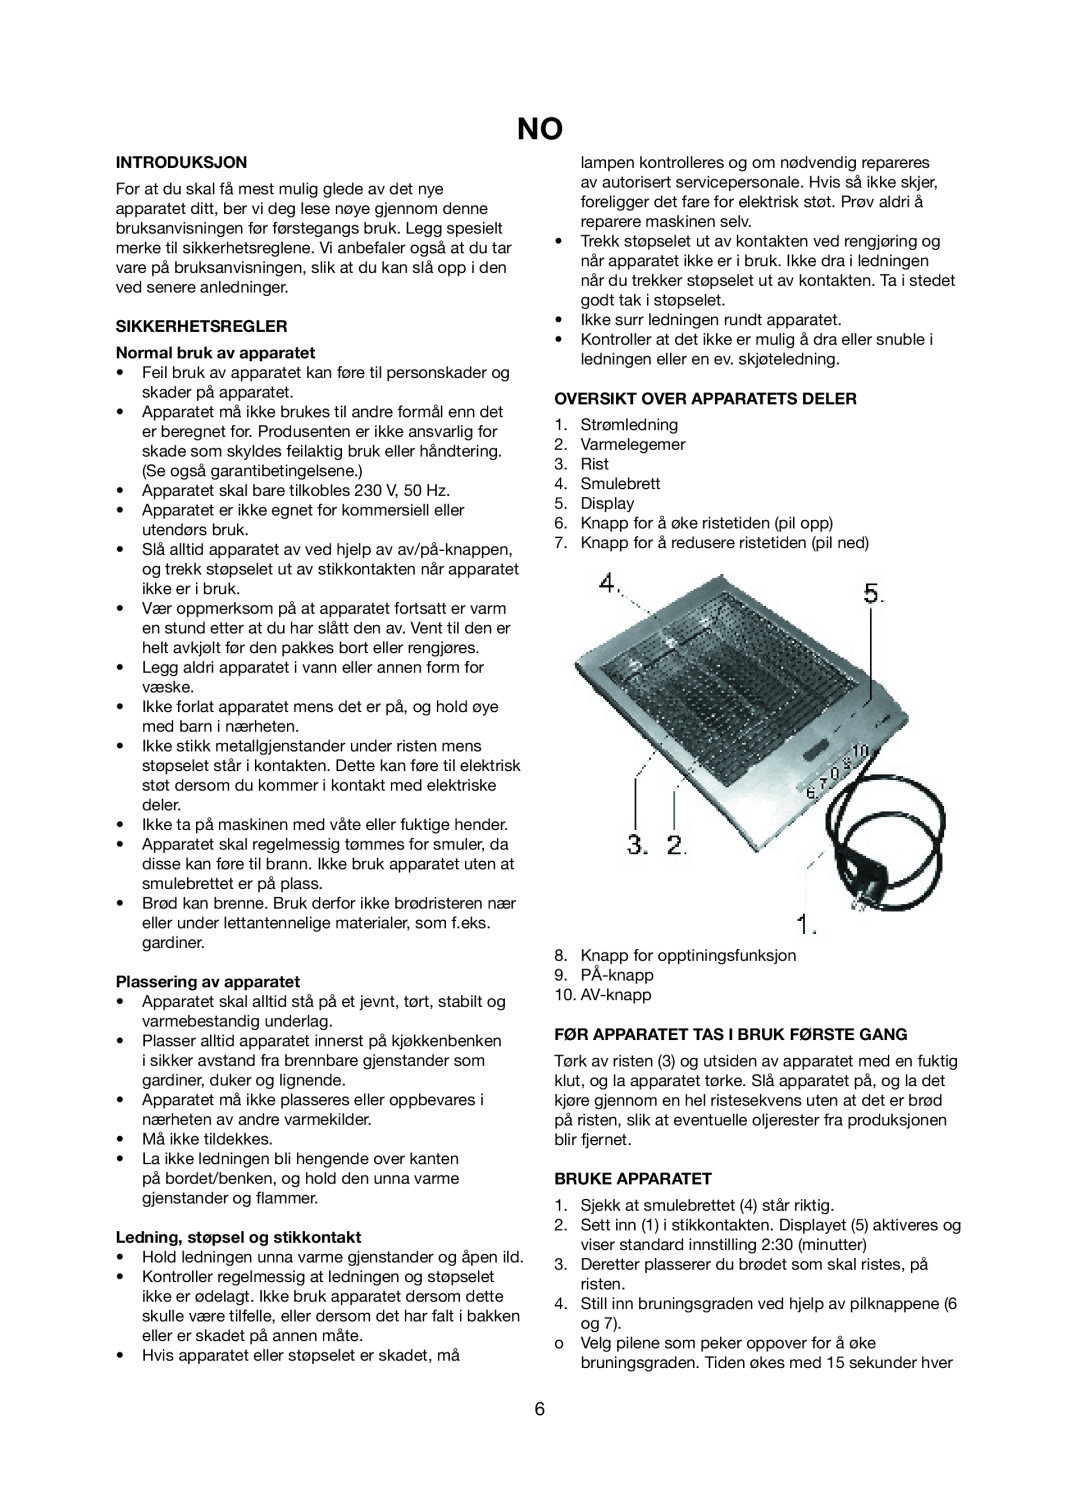 Exido 243-031 manual Introduksjon, SIKKERHETSREGLER Normal bruk av apparatet, Plassering av apparatet, Bruke Apparatet 